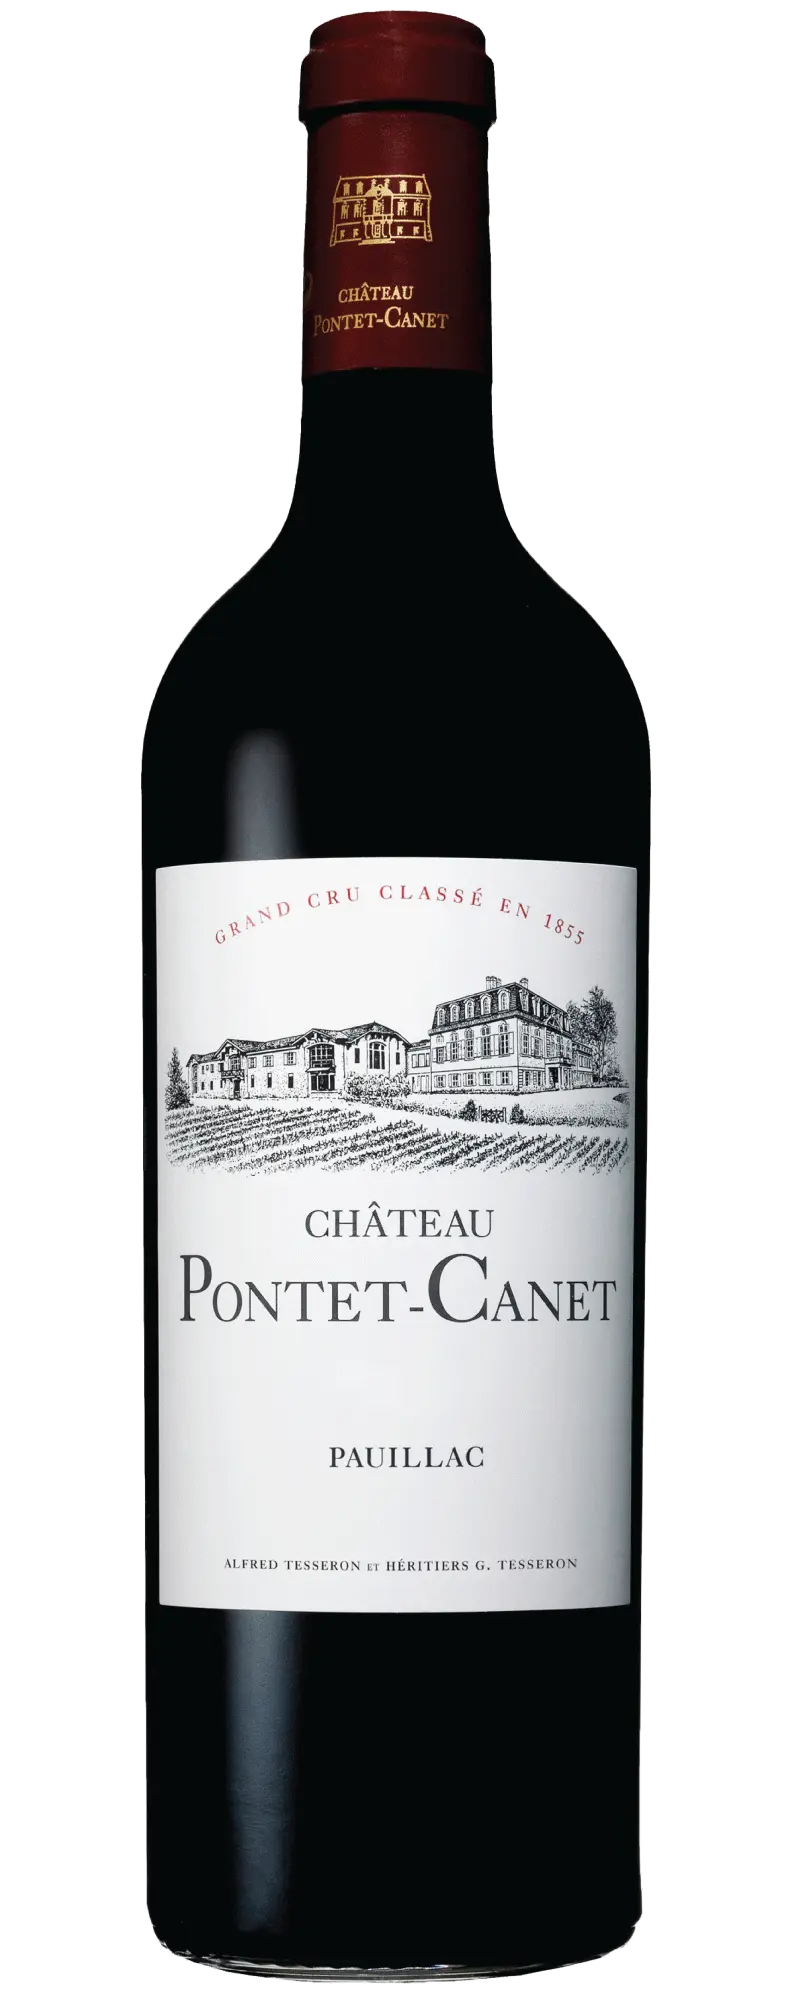 Chateau Pontet Canet 2012 (1x75cl) - TwoMoreGlasses.com